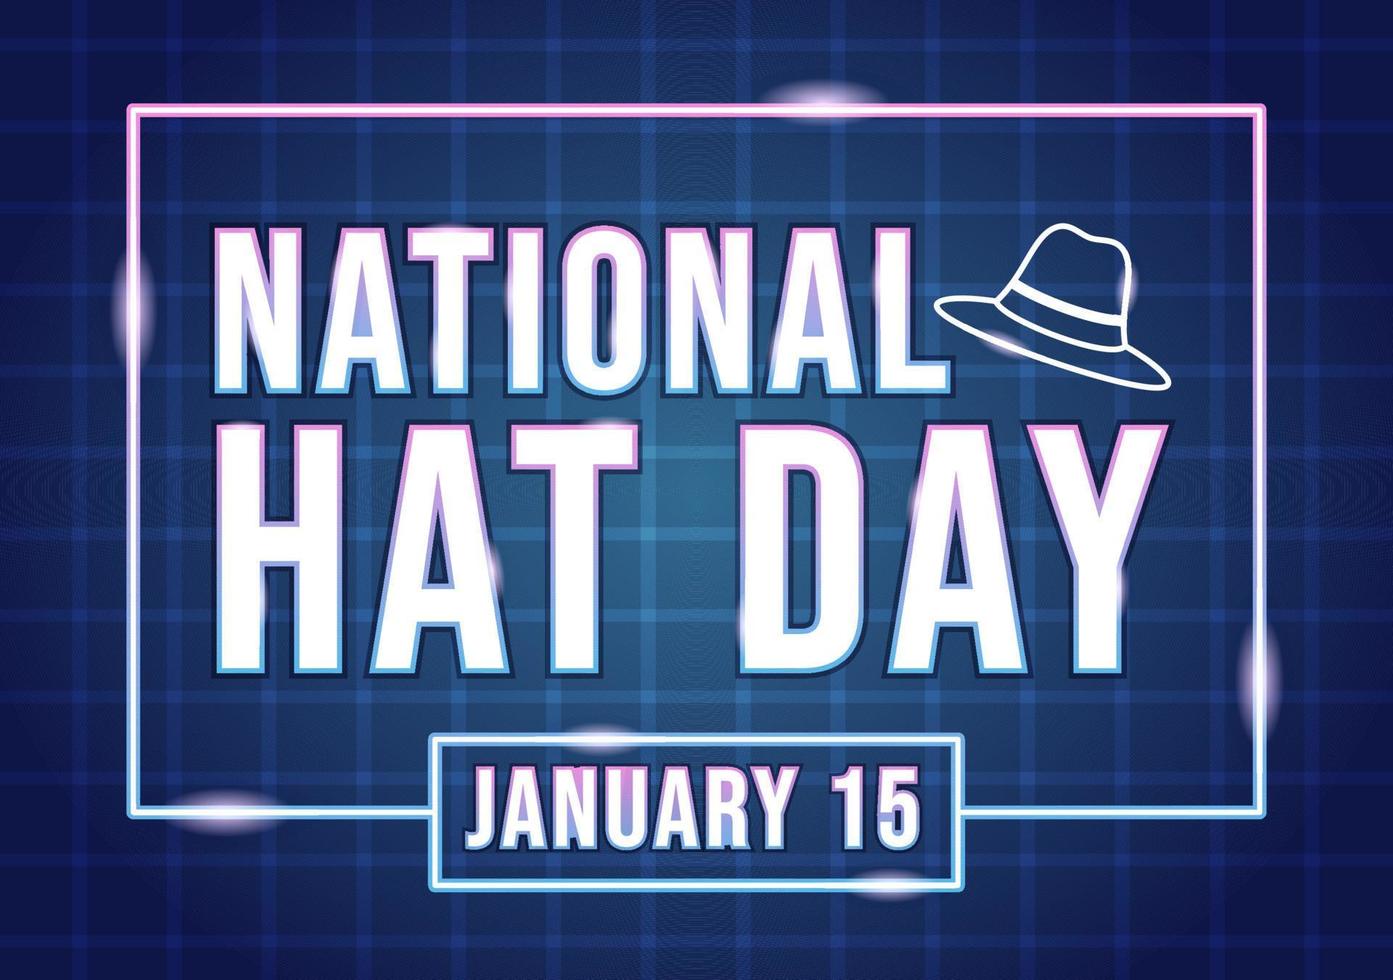 dia nacional do chapéu comemorado todos os anos em 15 de janeiro com chapéus fedora, boné, cloche ou derby na ilustração de modelos desenhados à mão de desenhos animados planos vetor